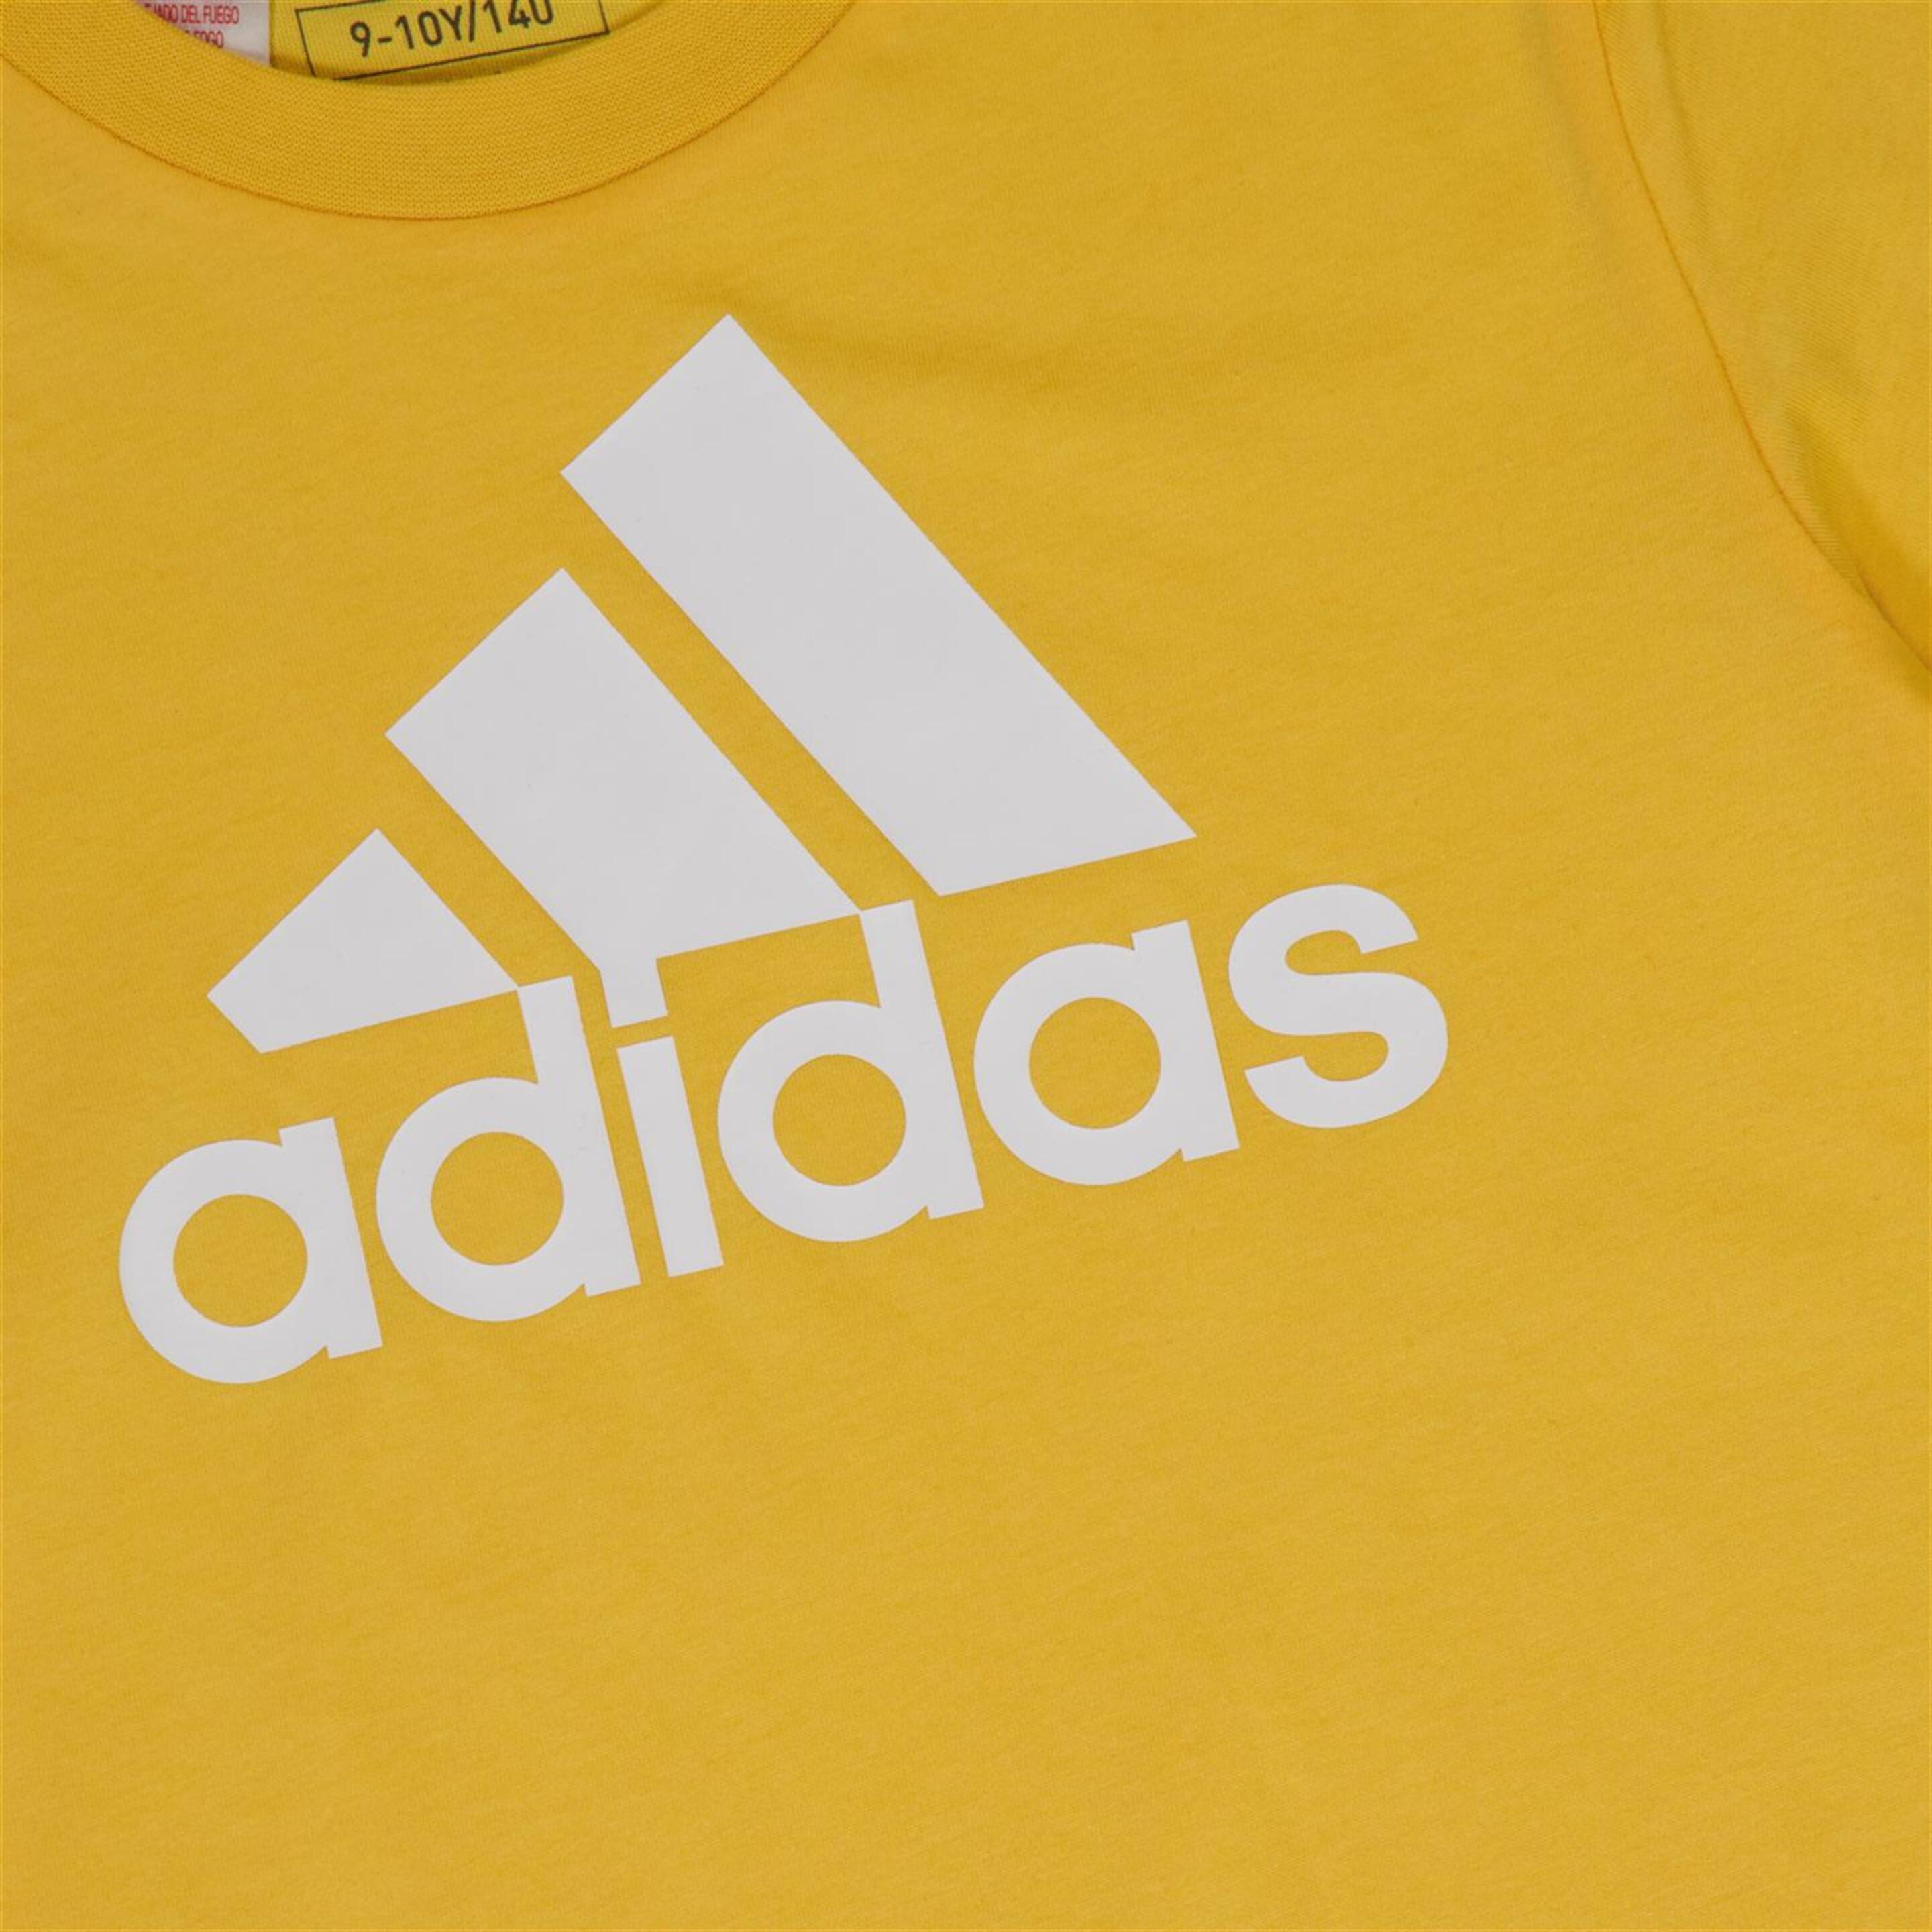 Camiseta adidas - Amarillo - Camiseta Junior  | Sprinter